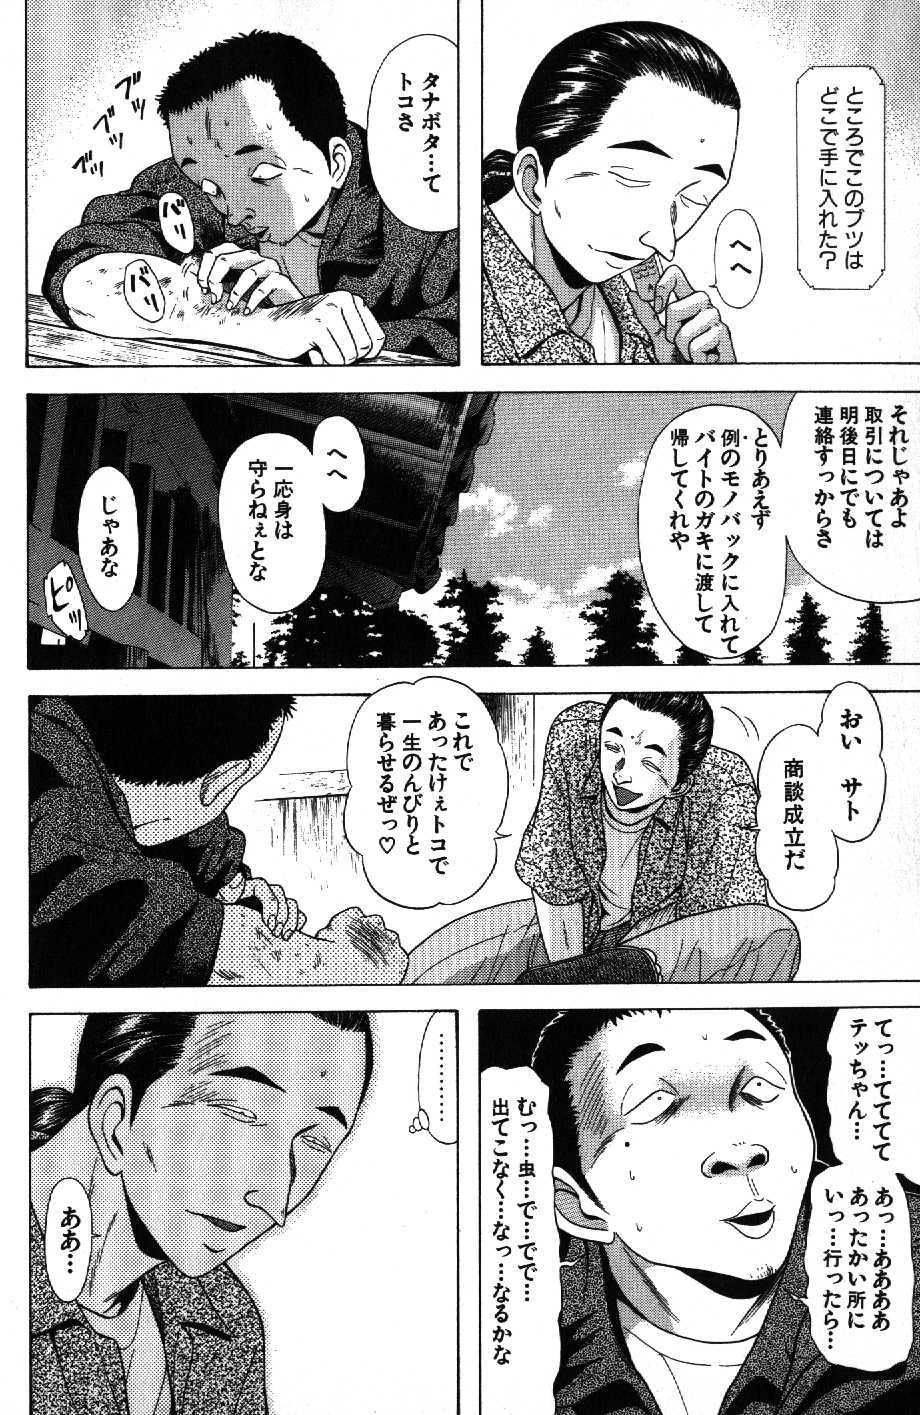 Kyoukasho ni nai vol. 11 教科書にないッ！